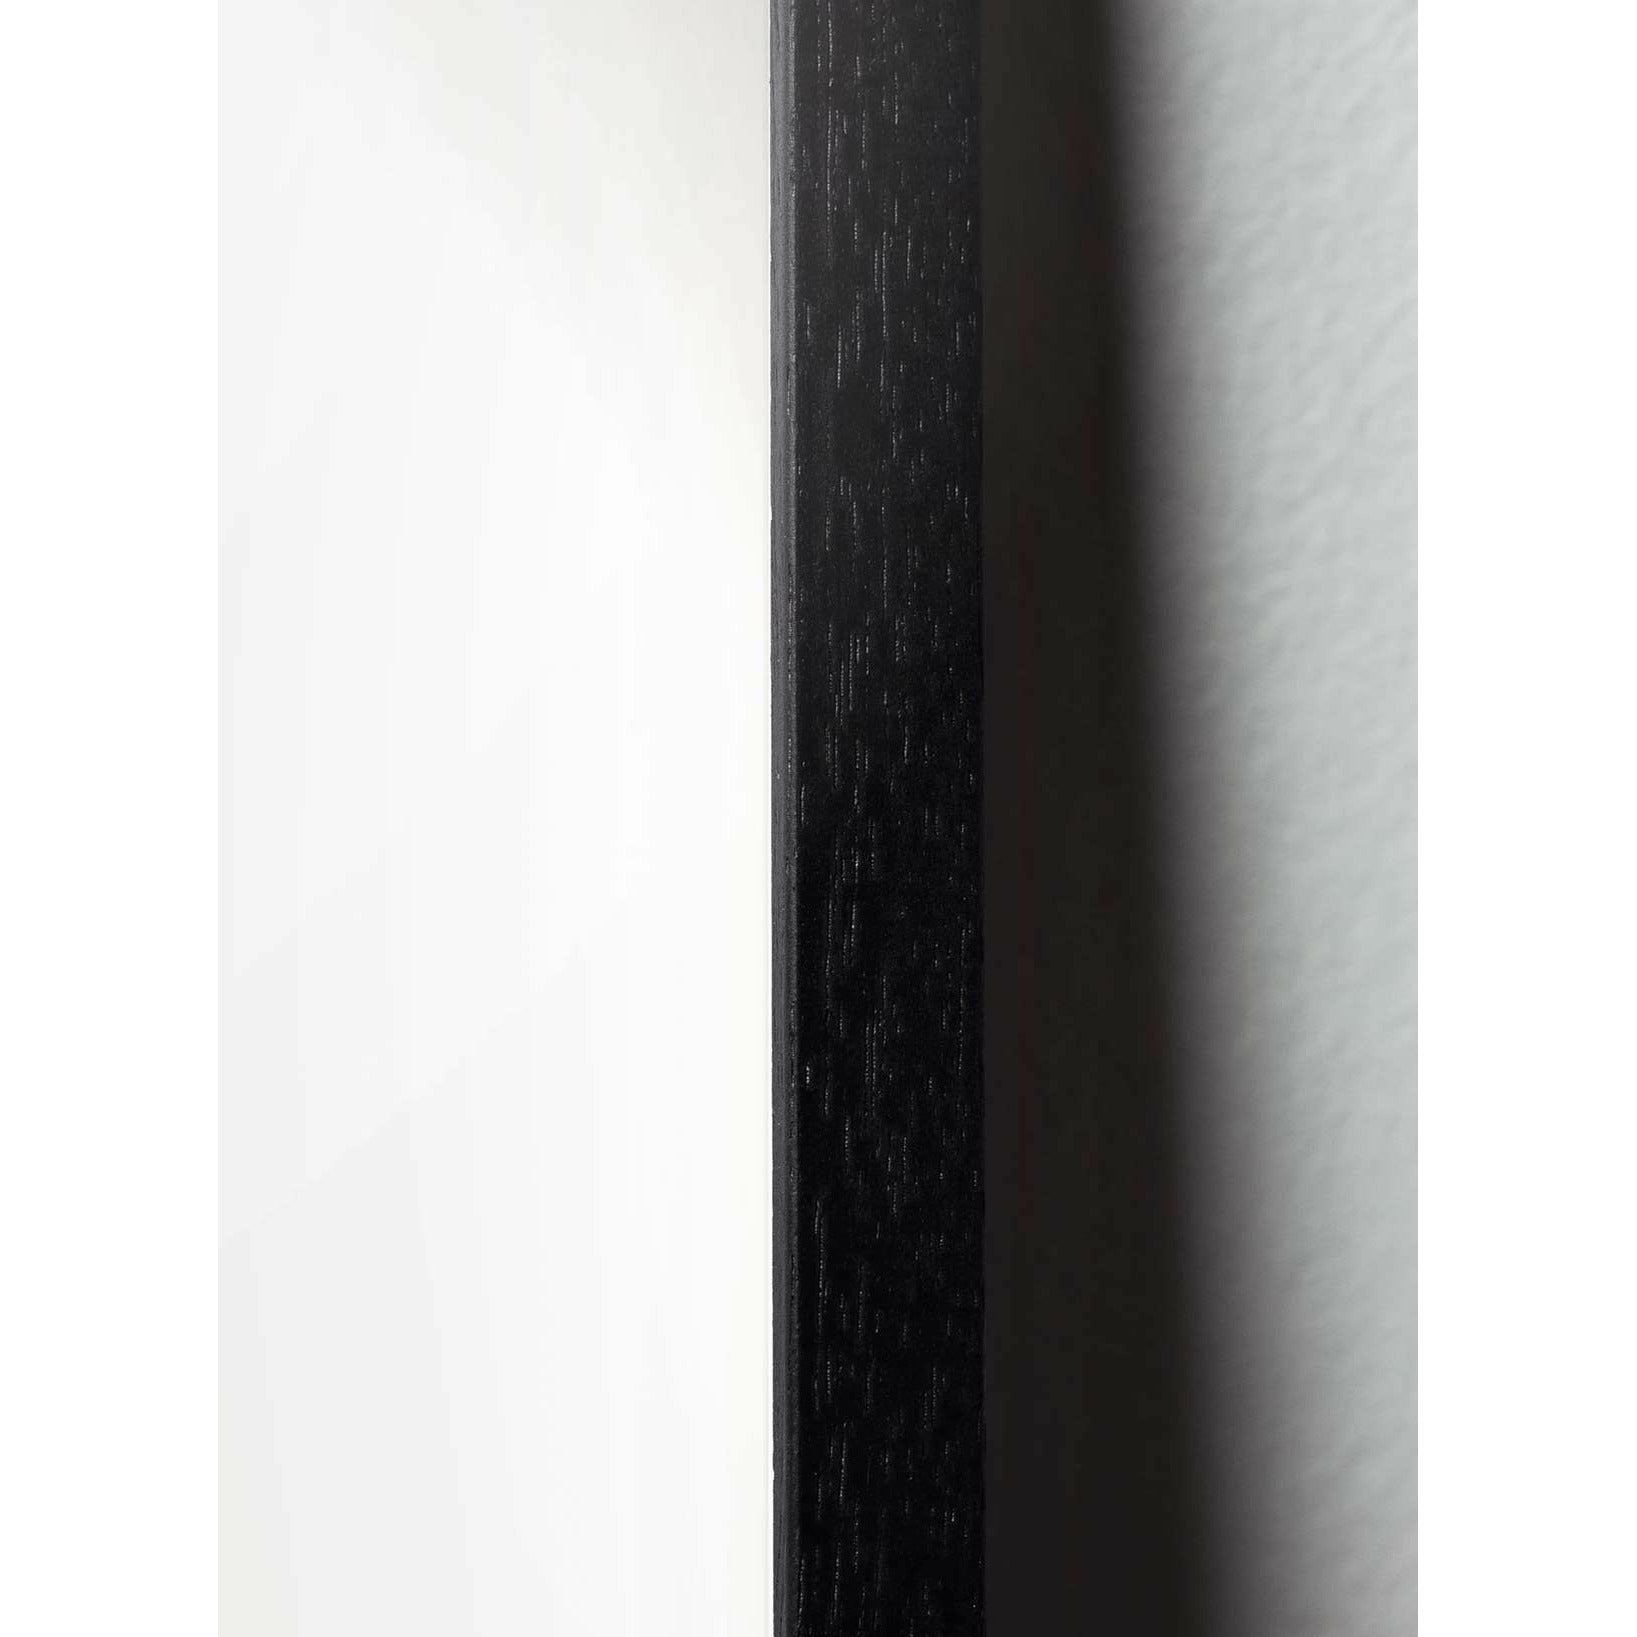 Brainchild Drop Line Poster, Rahmen aus schwarz lackiertem Holz 30x40 cm, weißer Hintergrund